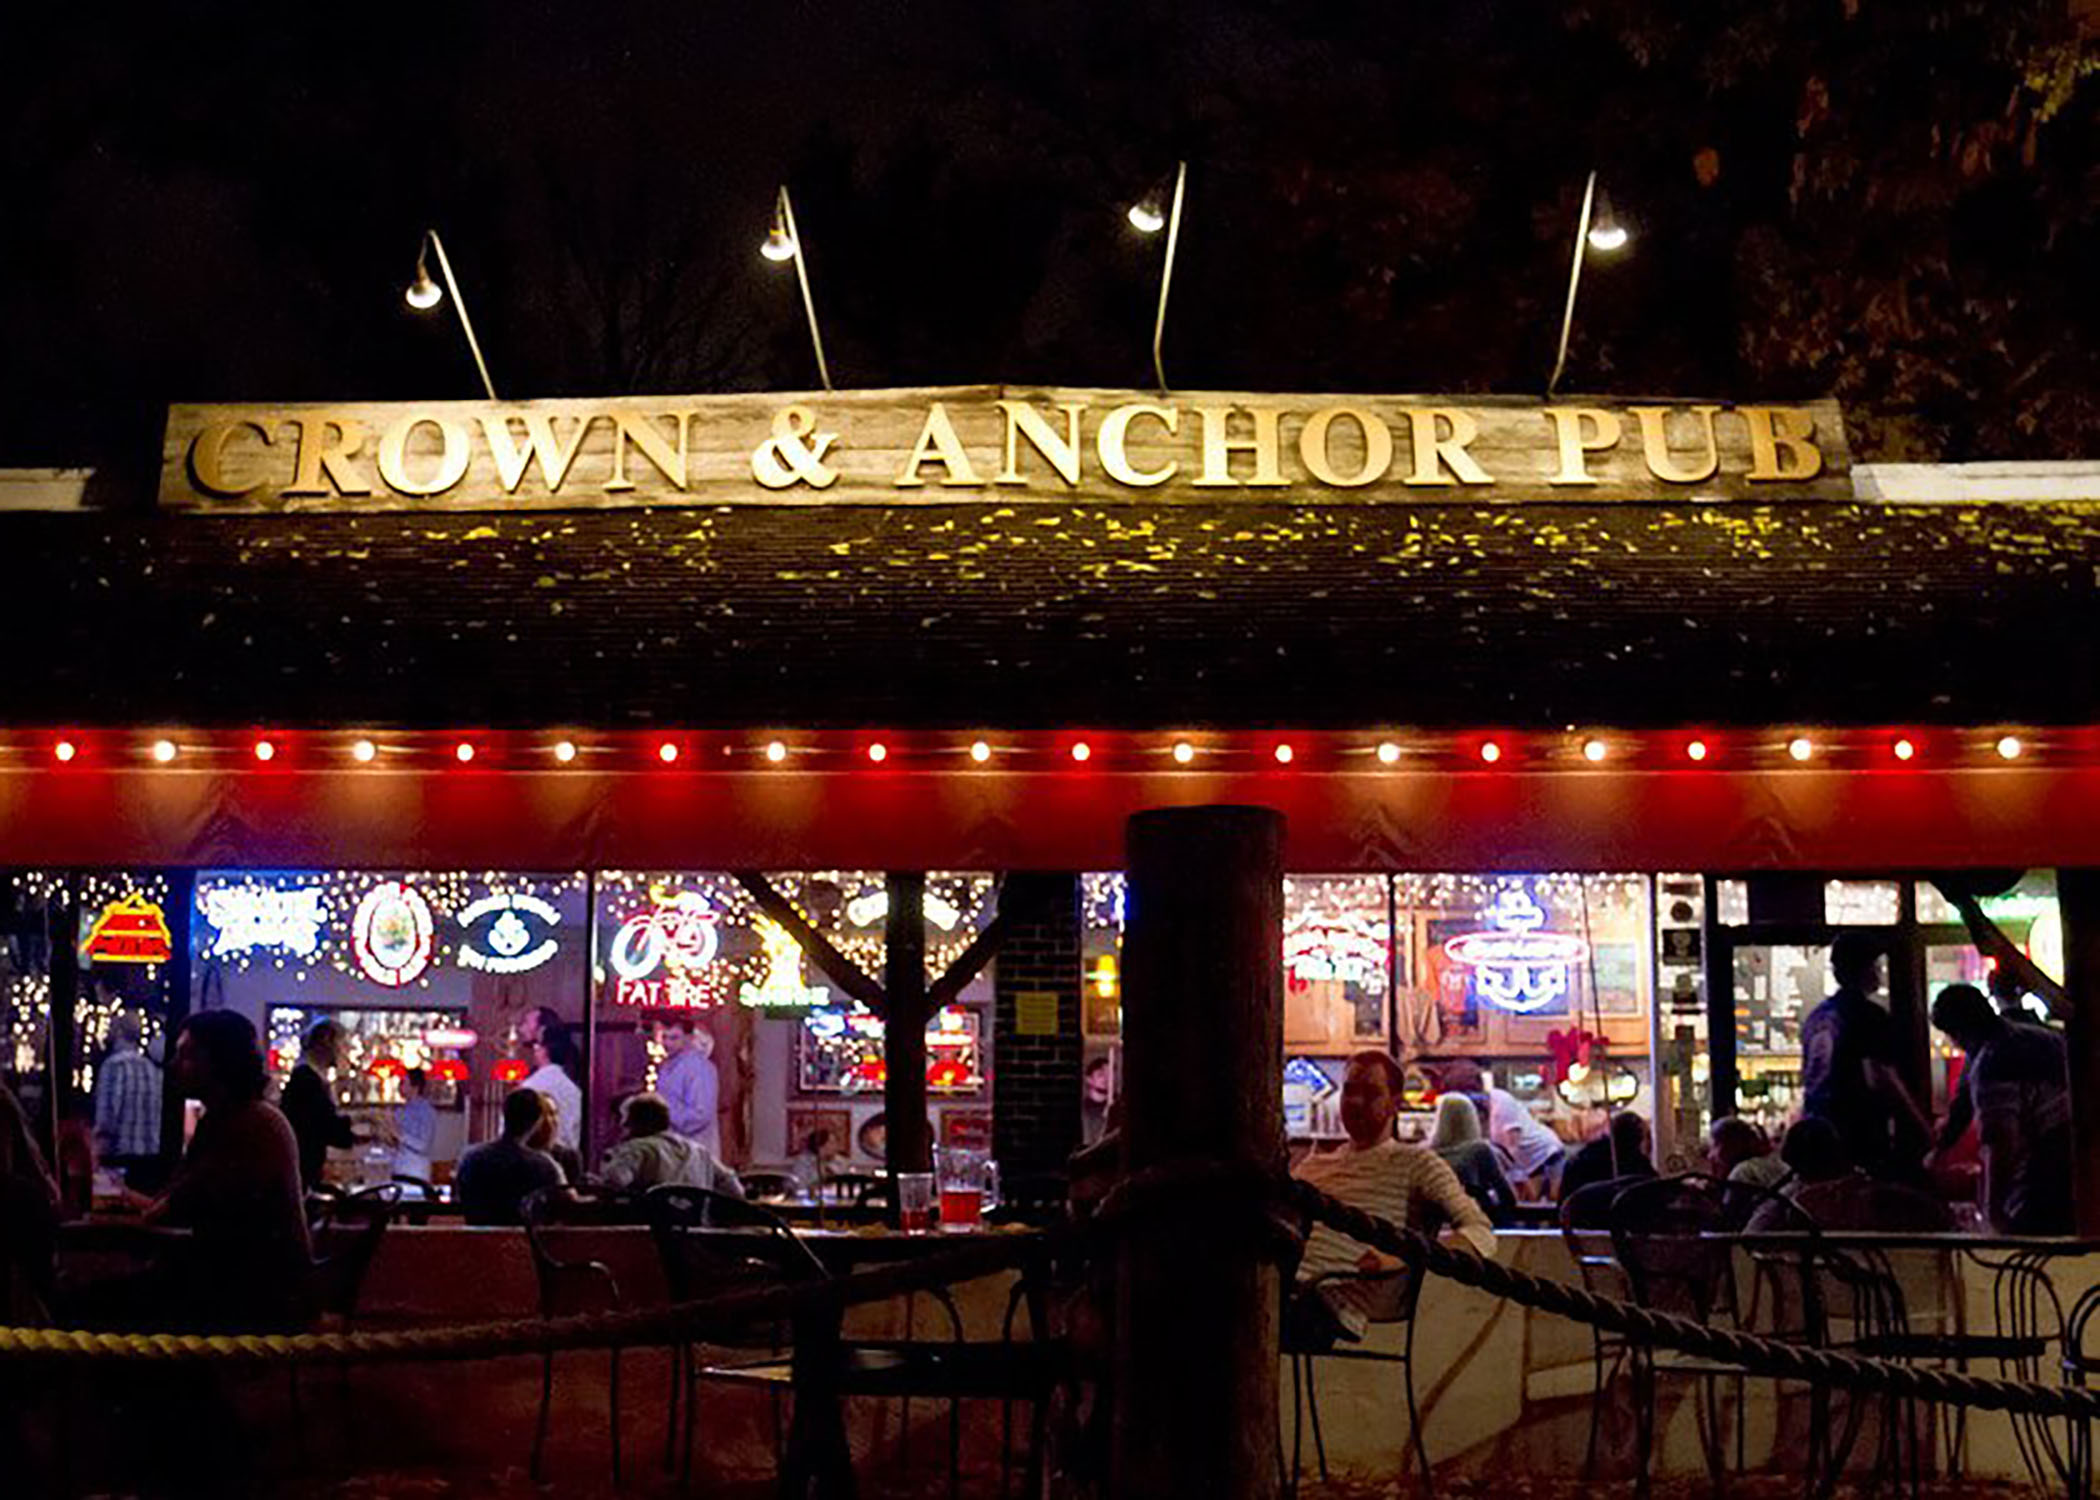 Crown & Anchor pub